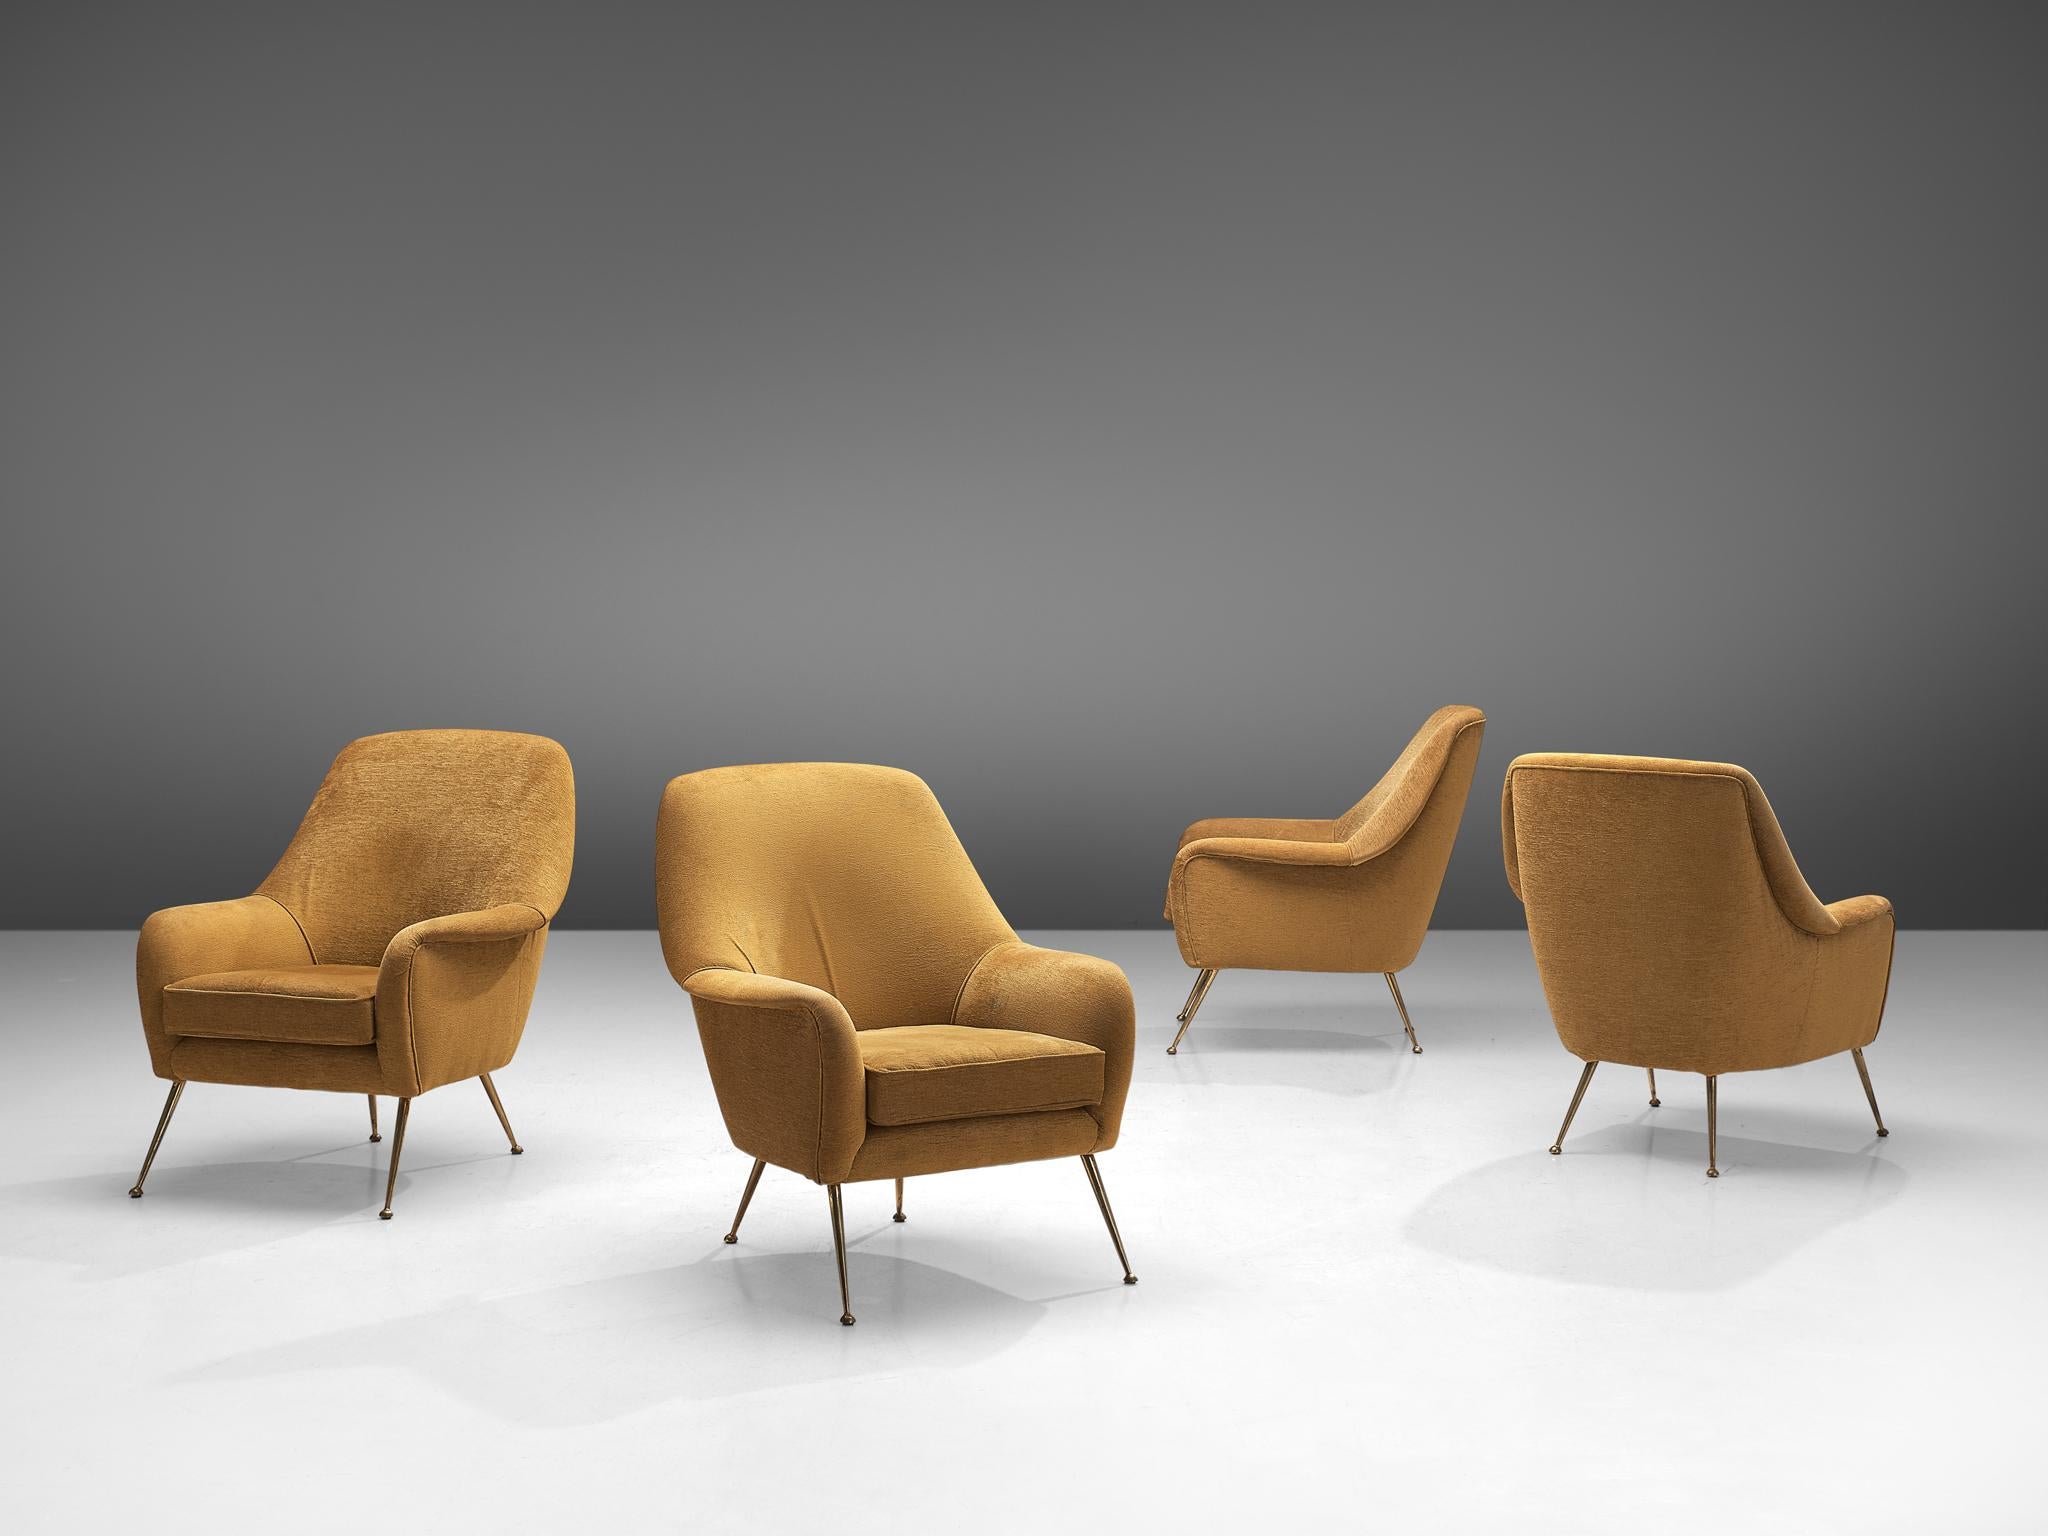 Sessel, Stoff, Messing, Italien, 1950er Jahre.

Dieser italienische Sessel zeichnet sich durch eine elegante Ästhetik aus, die sich aus den geschwungenen Linien und den runden Kanten ergibt. Die Sitzfläche wird von schlanken, nach außen gerichteten